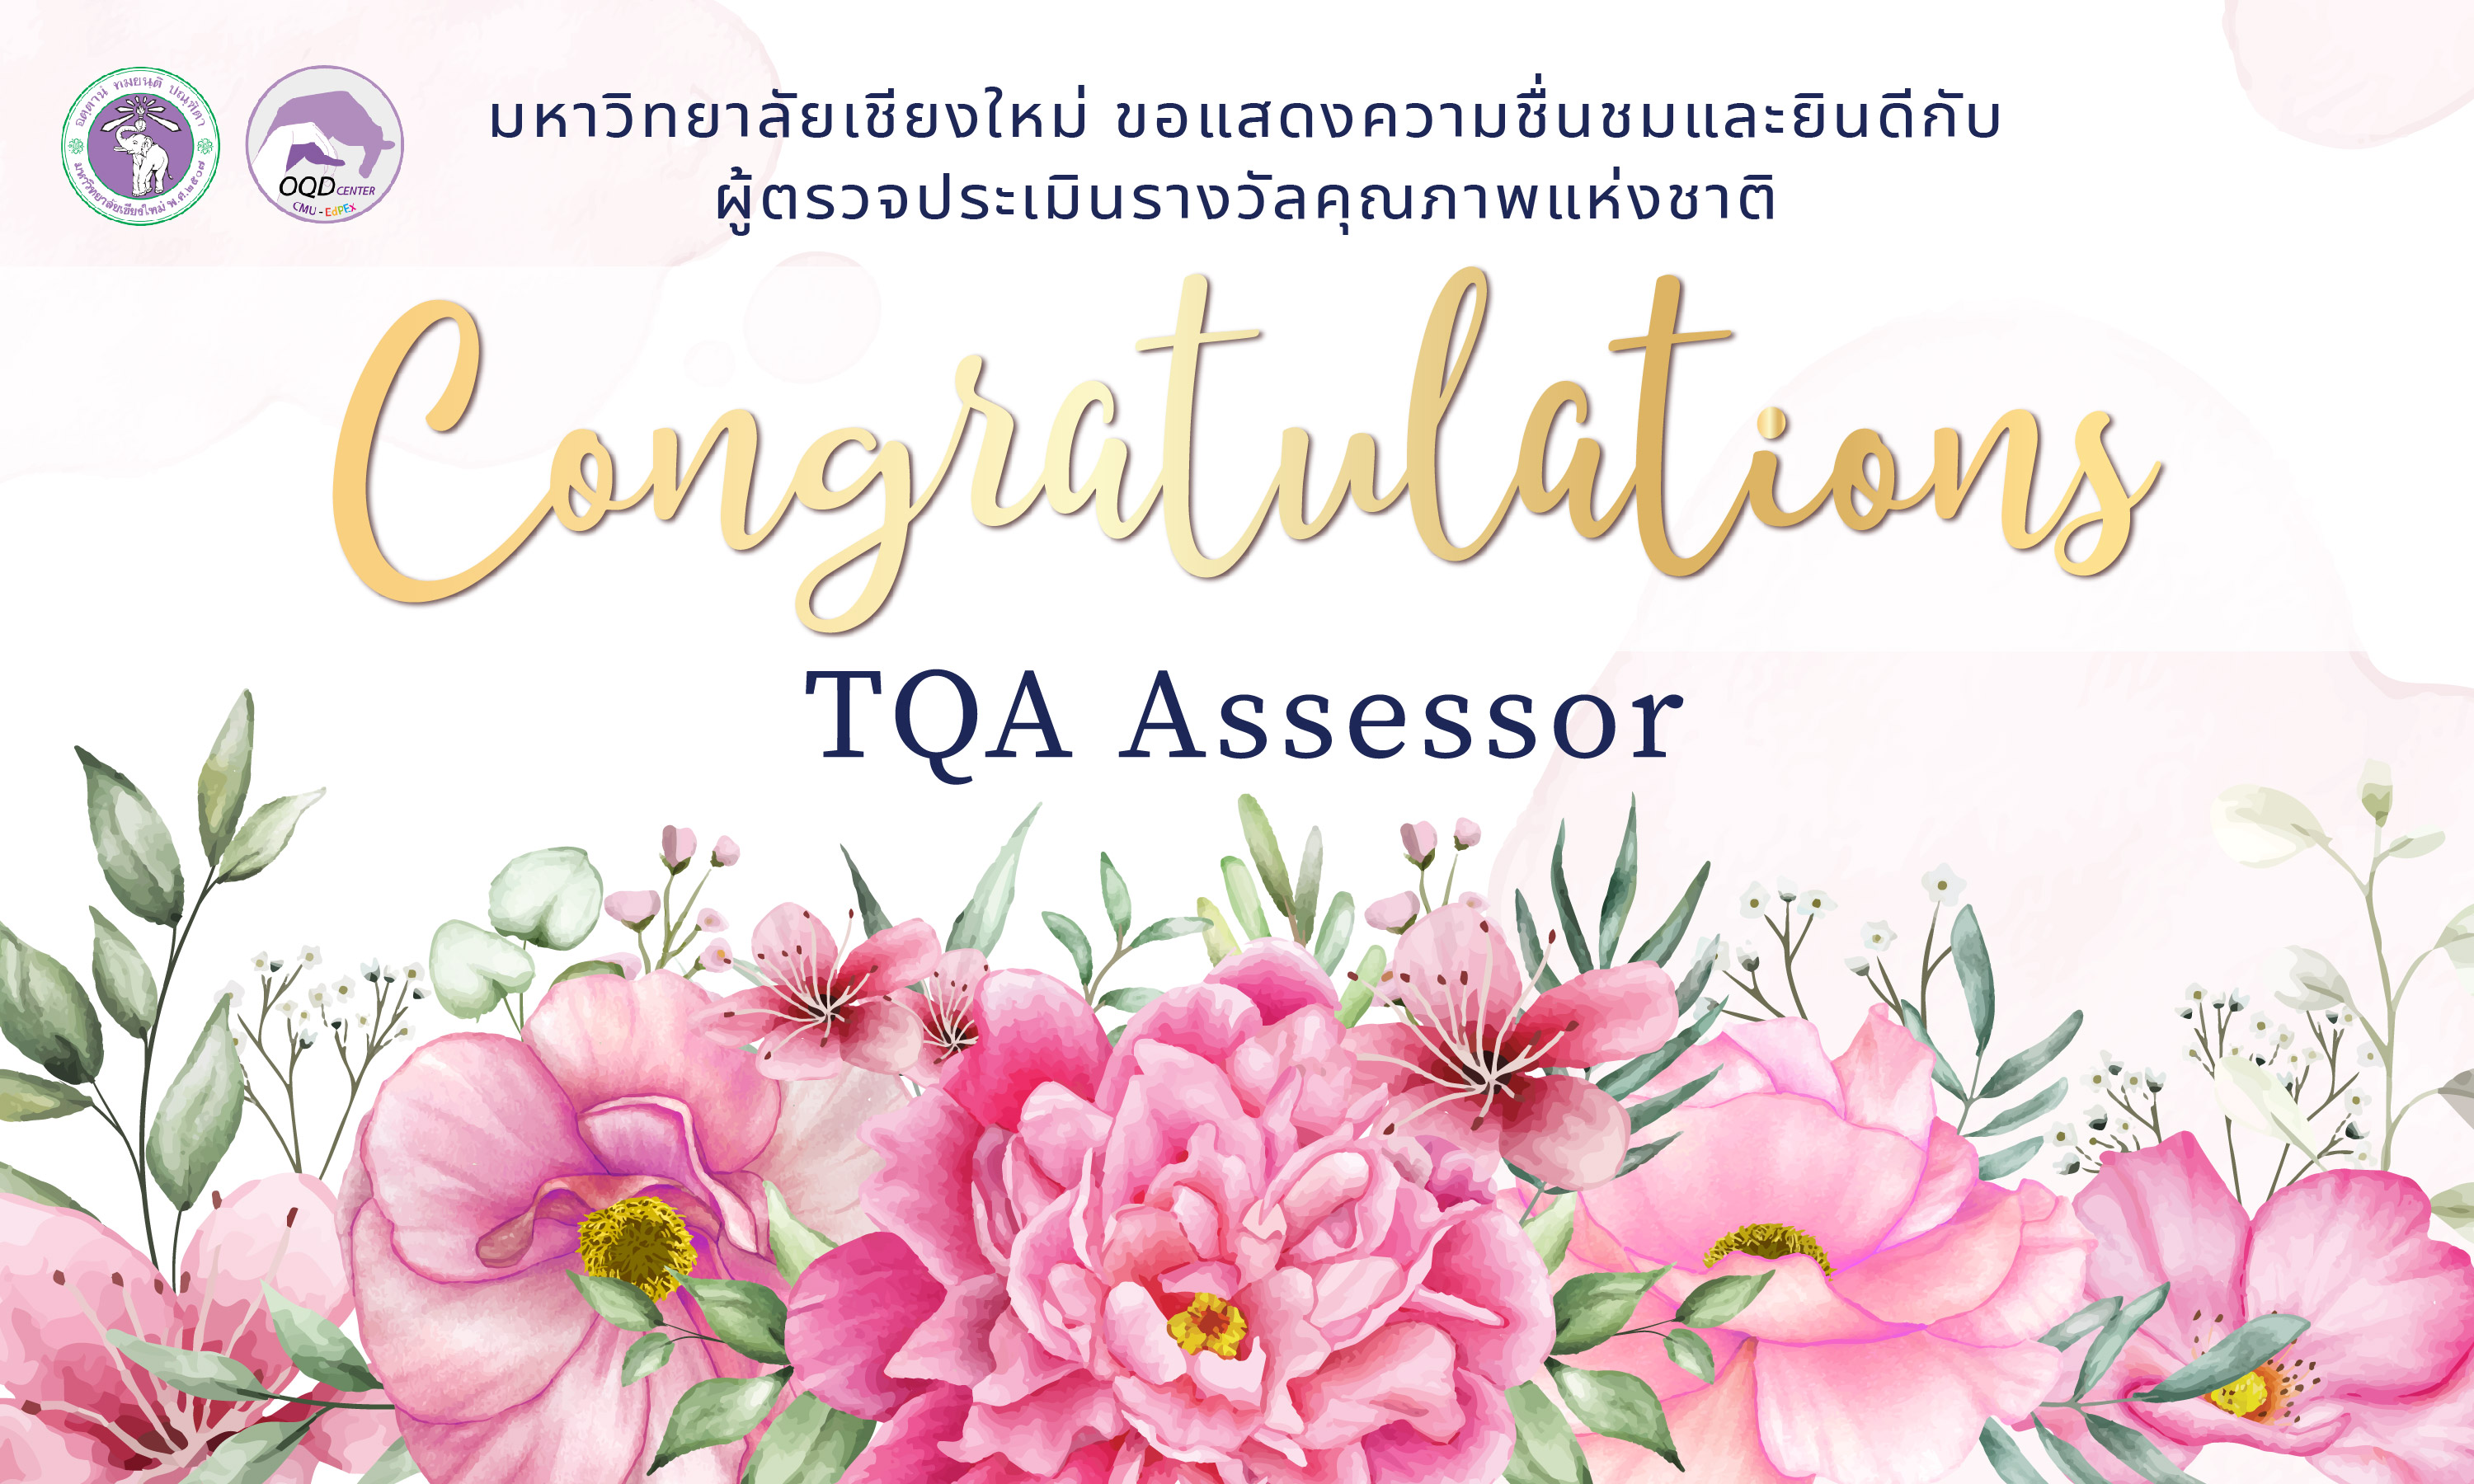 มหาวิทยาลัยเชียงใหม่ ขอแสดงความชื่นชมและยินดีกับผู้ตรวจประเมินรางวัลคุณภาพแห่งชาติ (TQA Assessor)